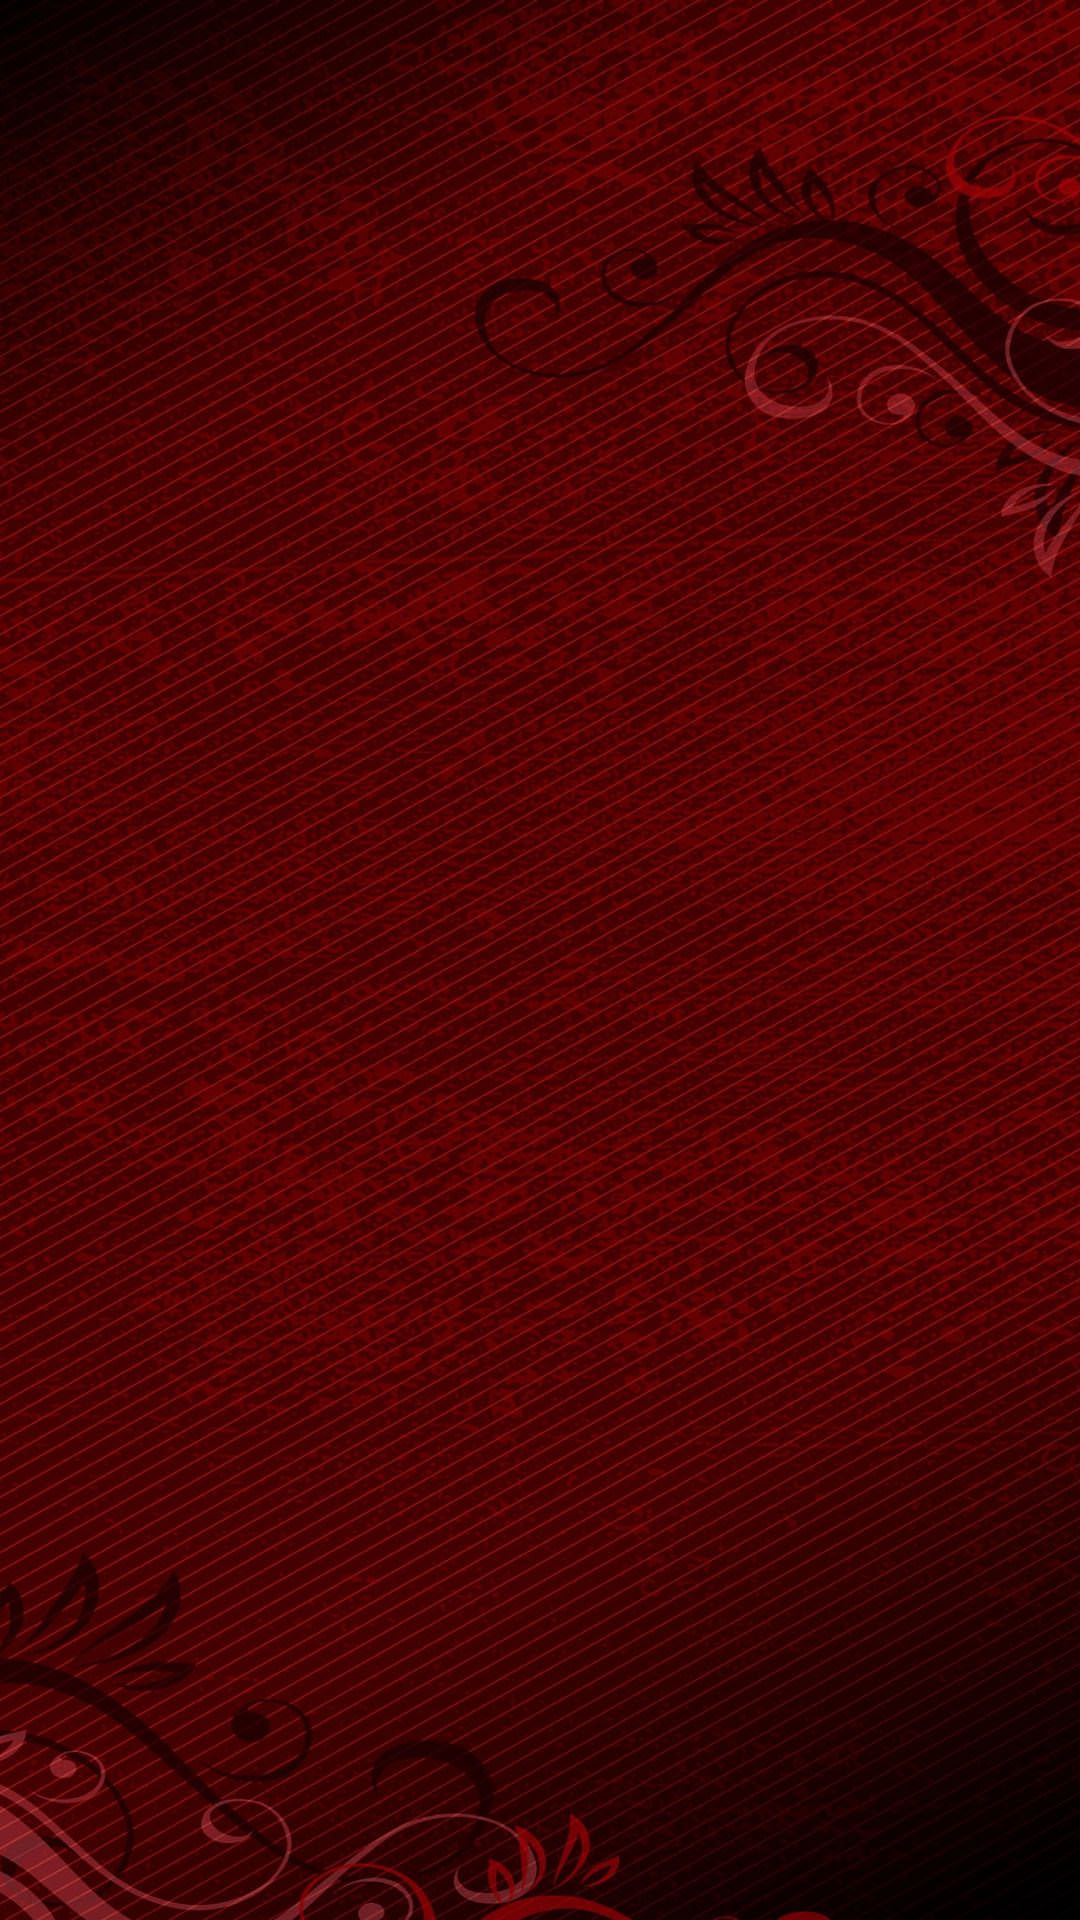 古びた質感がおしゃれな赤いiphone X壁紙 Iphone Wallpapers